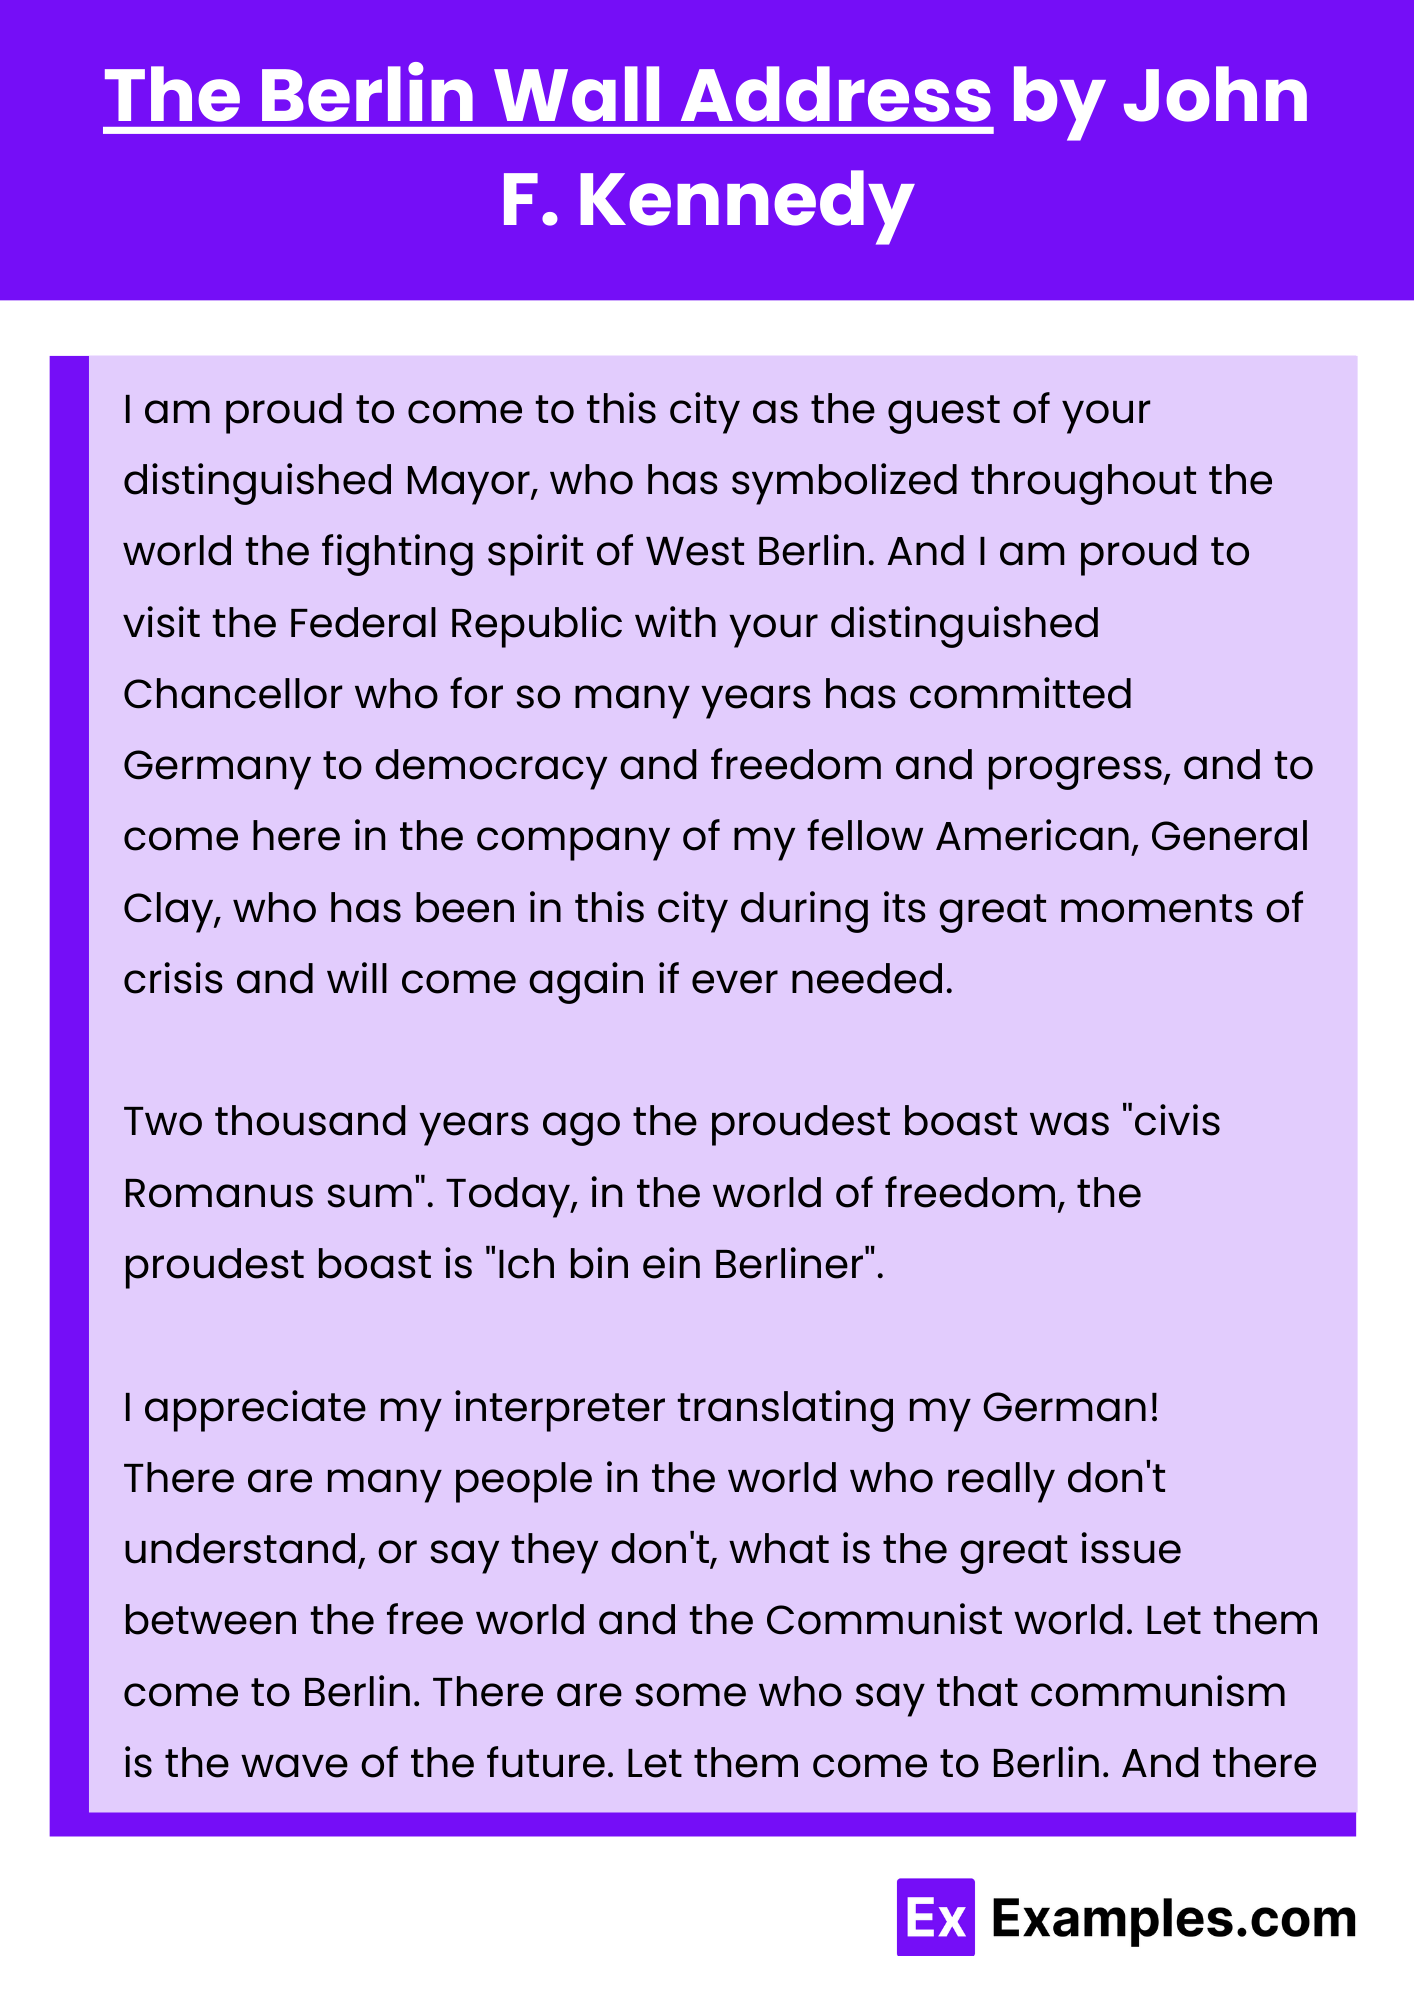 The Berlin Wall Address by John F. Kennedy